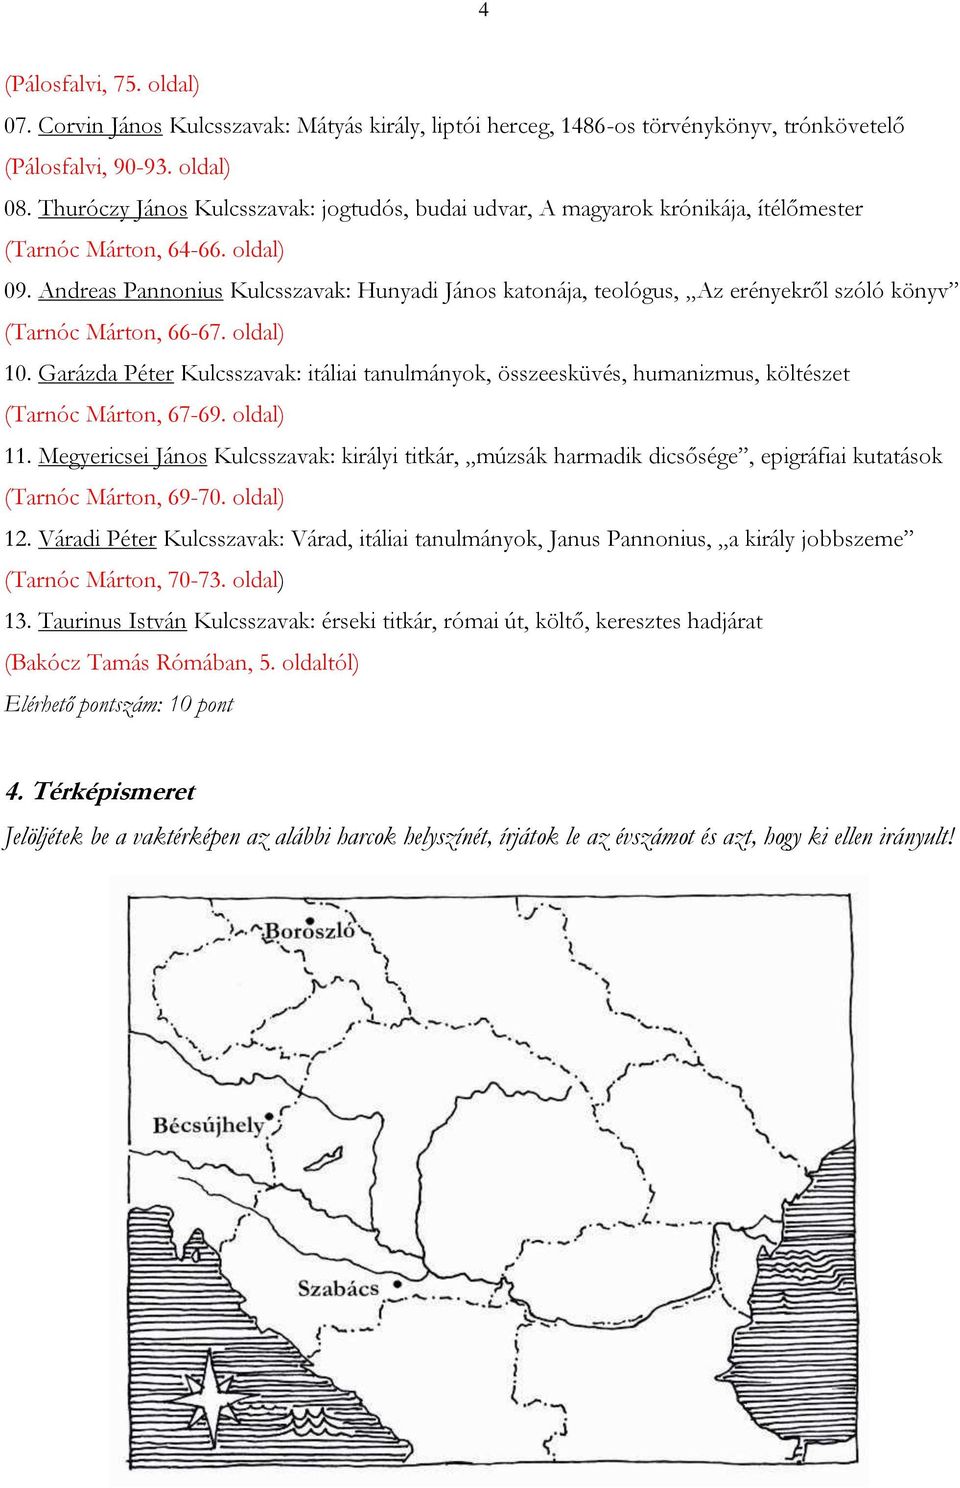 Andreas Pannonius Kulcsszavak: Hunyadi János katonája, teológus, Az erényekről szóló könyv (Tarnóc Márton, 66-67. oldal) 10.